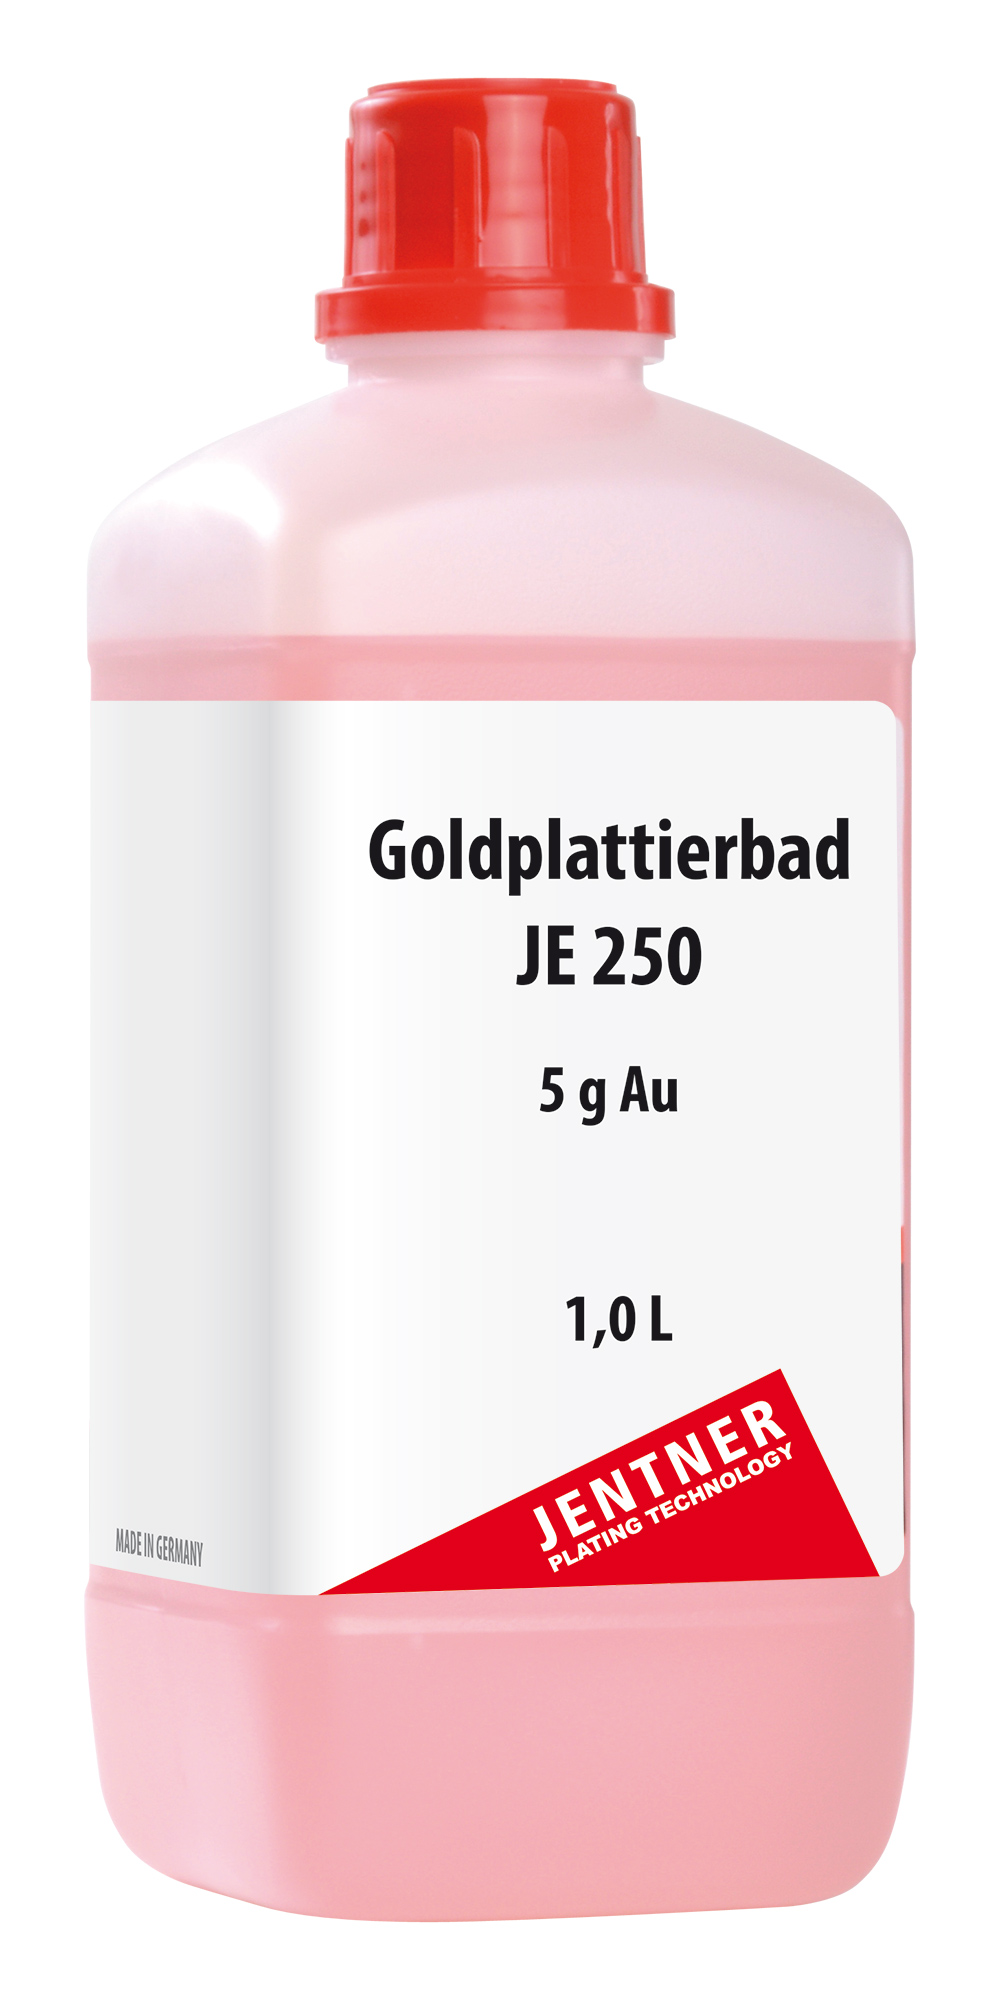 Goldplattierbad JE250 - 5 g/L Au